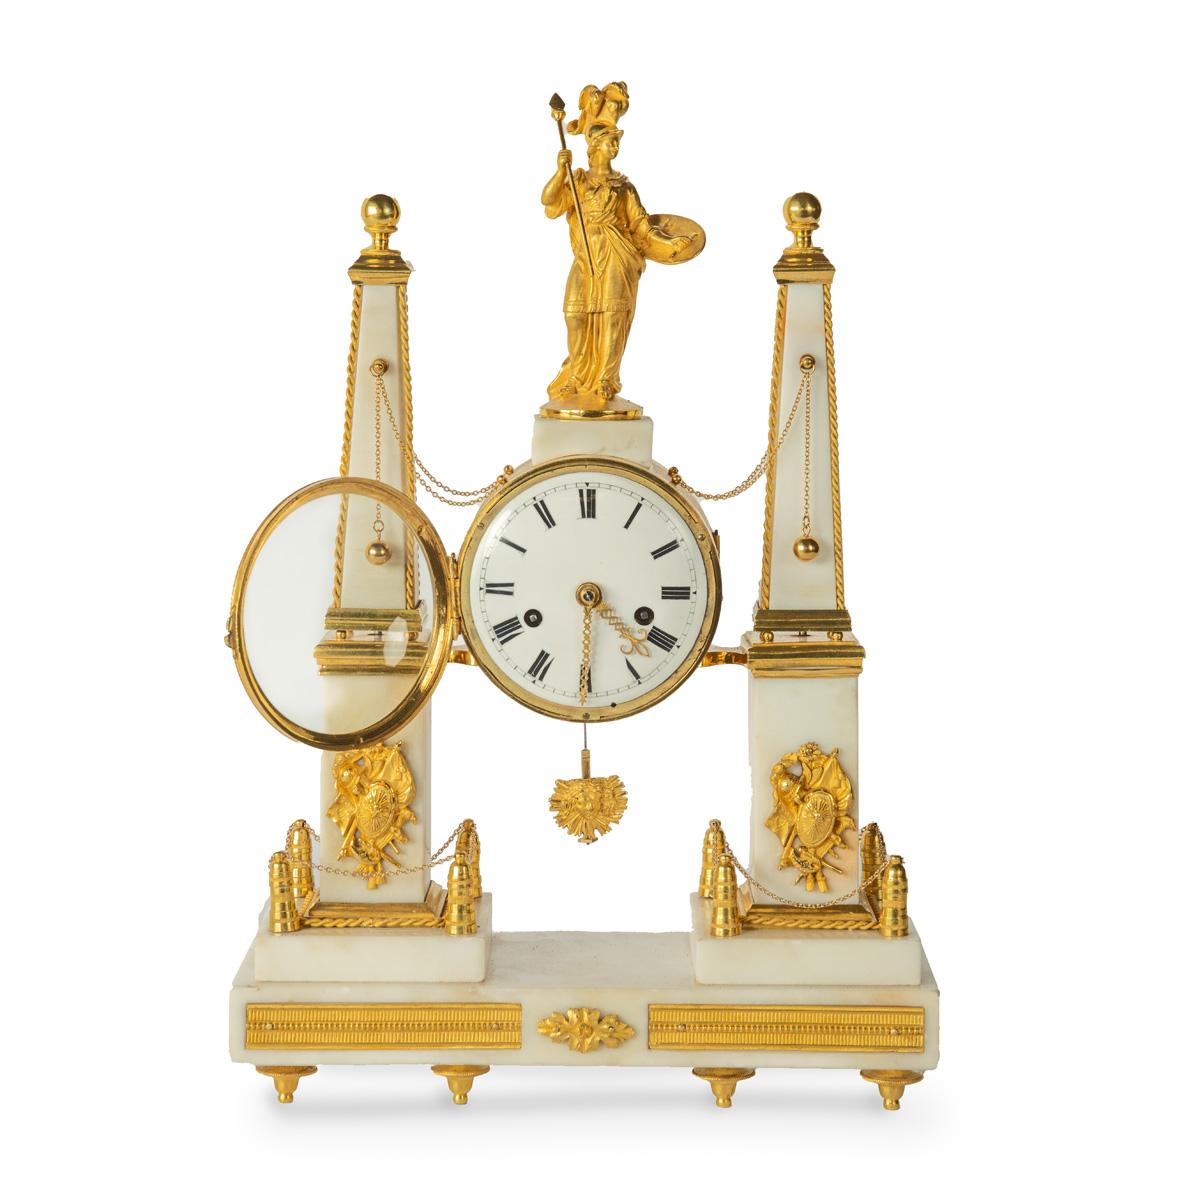 Eine späte Louis XVI Marmor und Ormolu Portikus-Uhr, bestehend aus einer zentralen trommelförmigen Uhr mit einem Sonnenaufgang Pendel, überragt von der vergoldeten Figur der Athene trägt eine Rüstung mit einem gefiederten Helm und Gorgon's Kopf